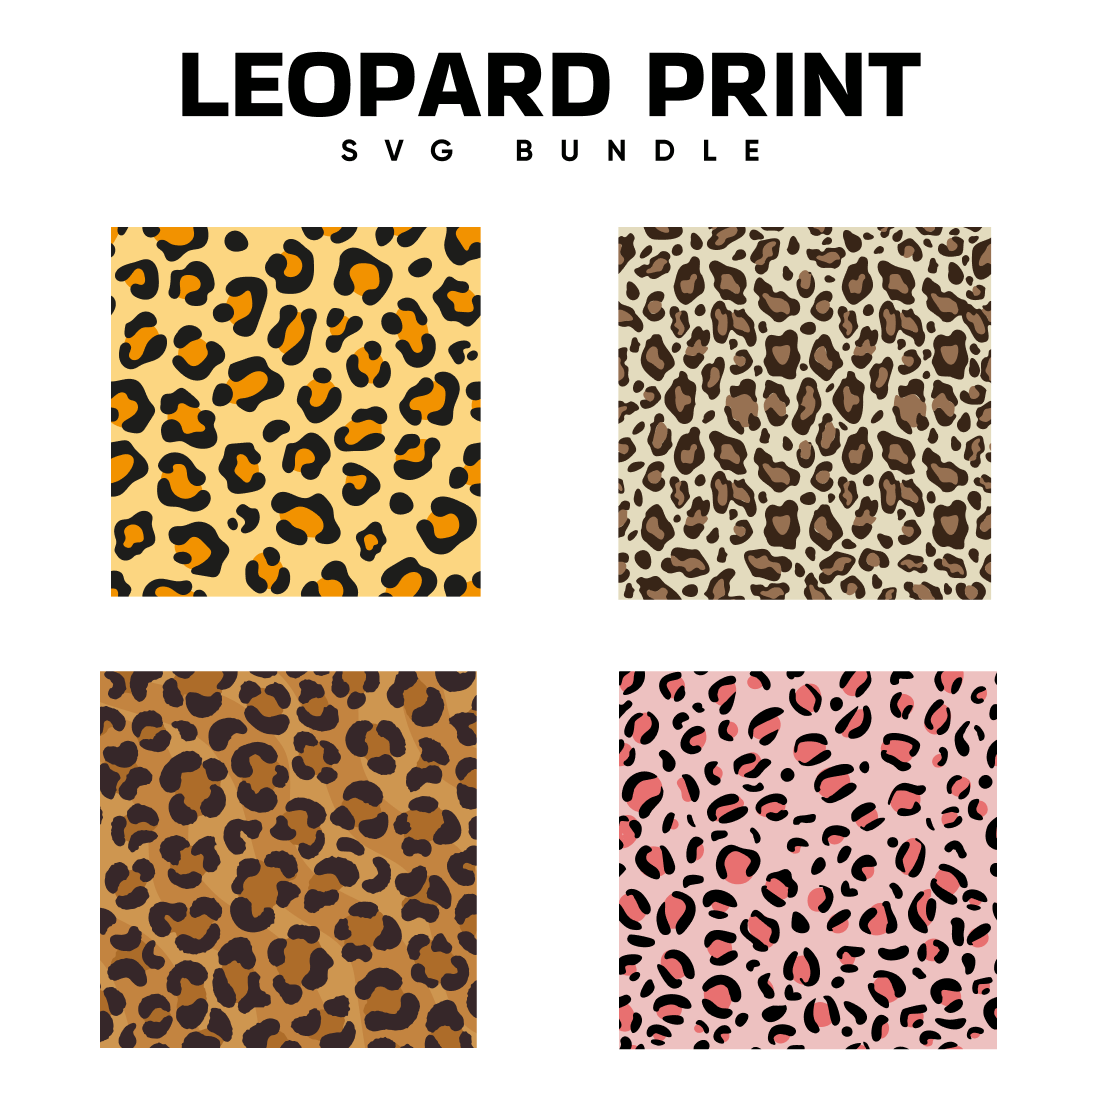 Leopard Print SVG Free.